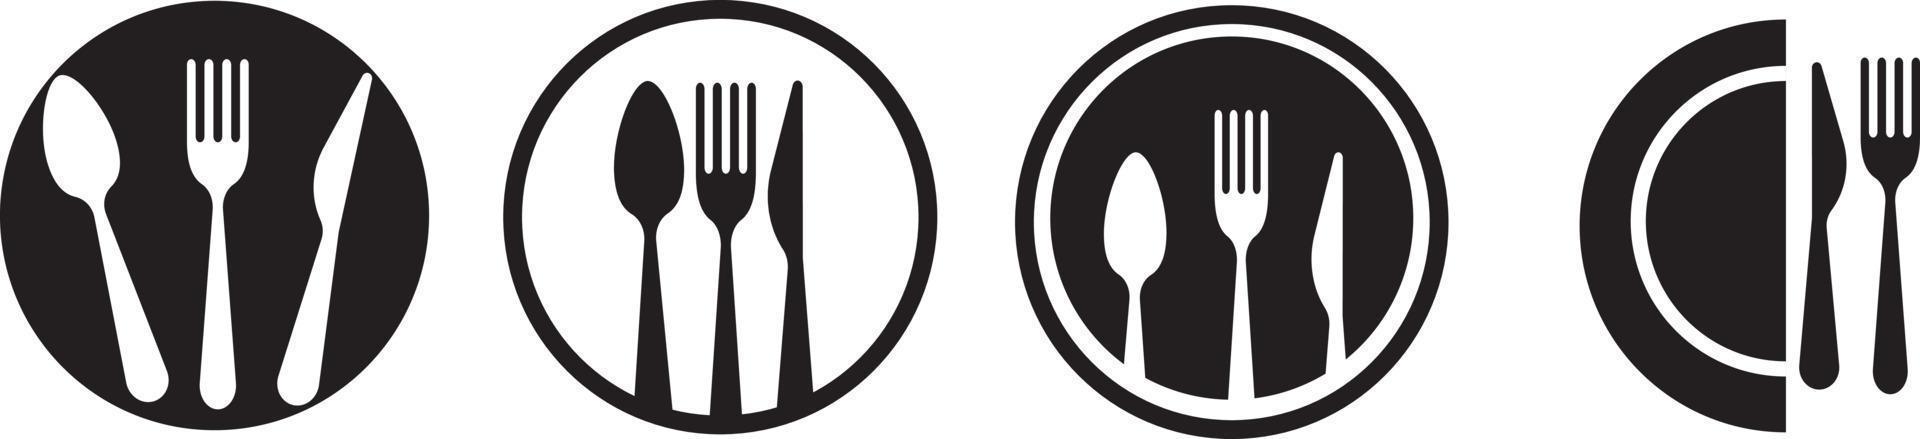 Löffel, Gabel, Messer und Teller-Icon-Set, Menü-Logo, Silhouette von Besteck. Geschirr-Vektor-Illustration vektor